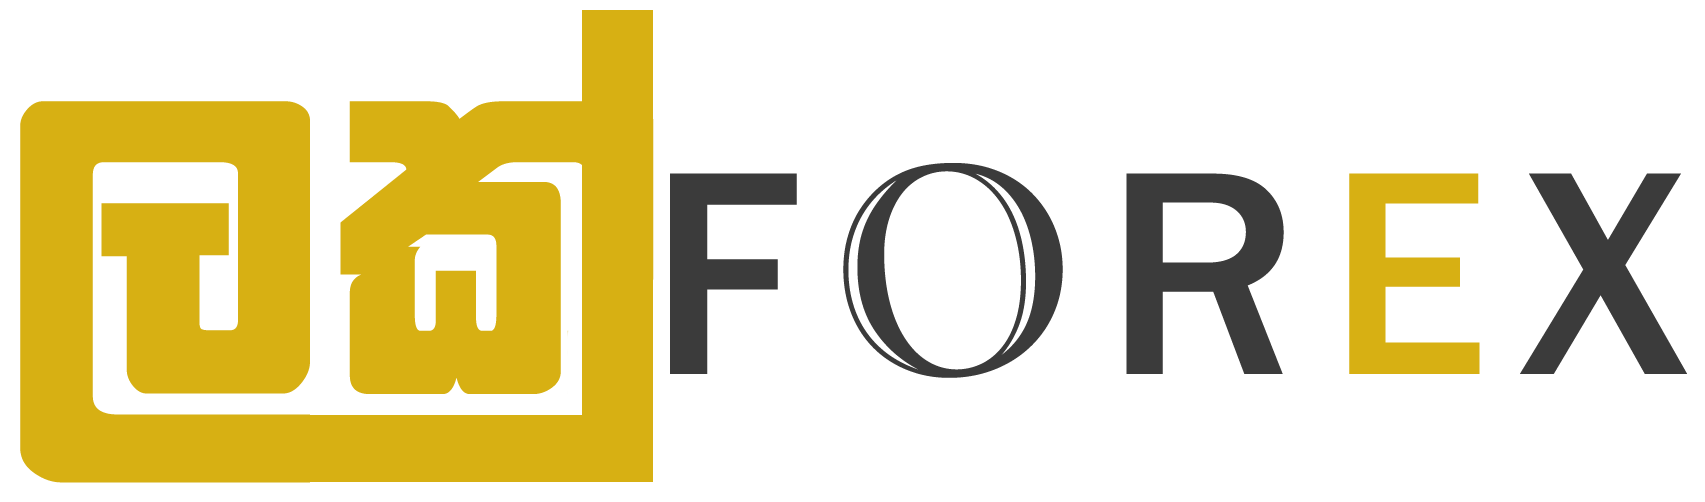 lakforex logo